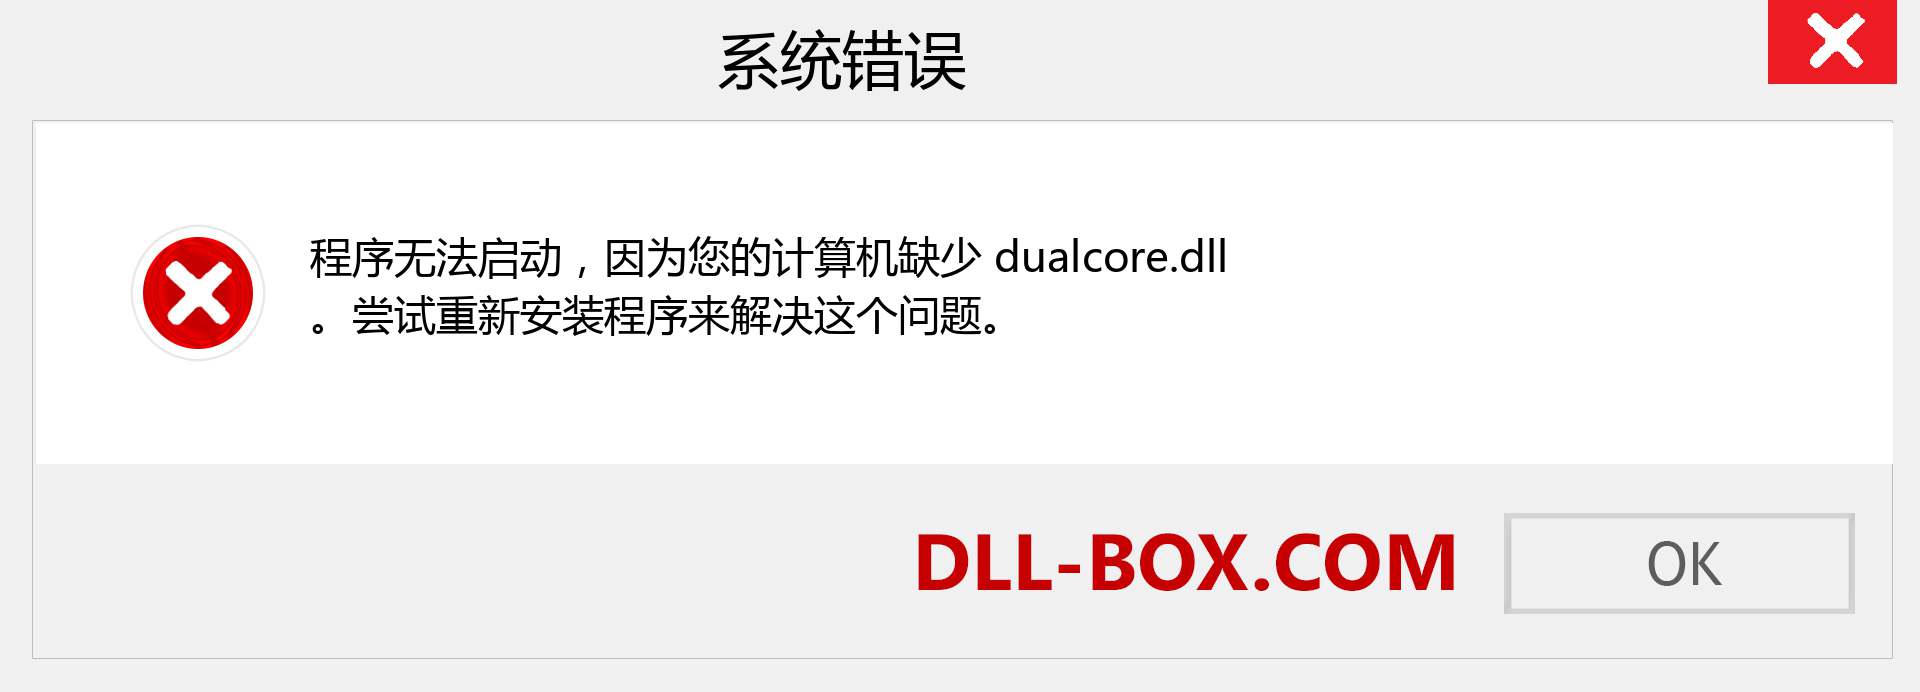 dualcore.dll 文件丢失？。 适用于 Windows 7、8、10 的下载 - 修复 Windows、照片、图像上的 dualcore dll 丢失错误